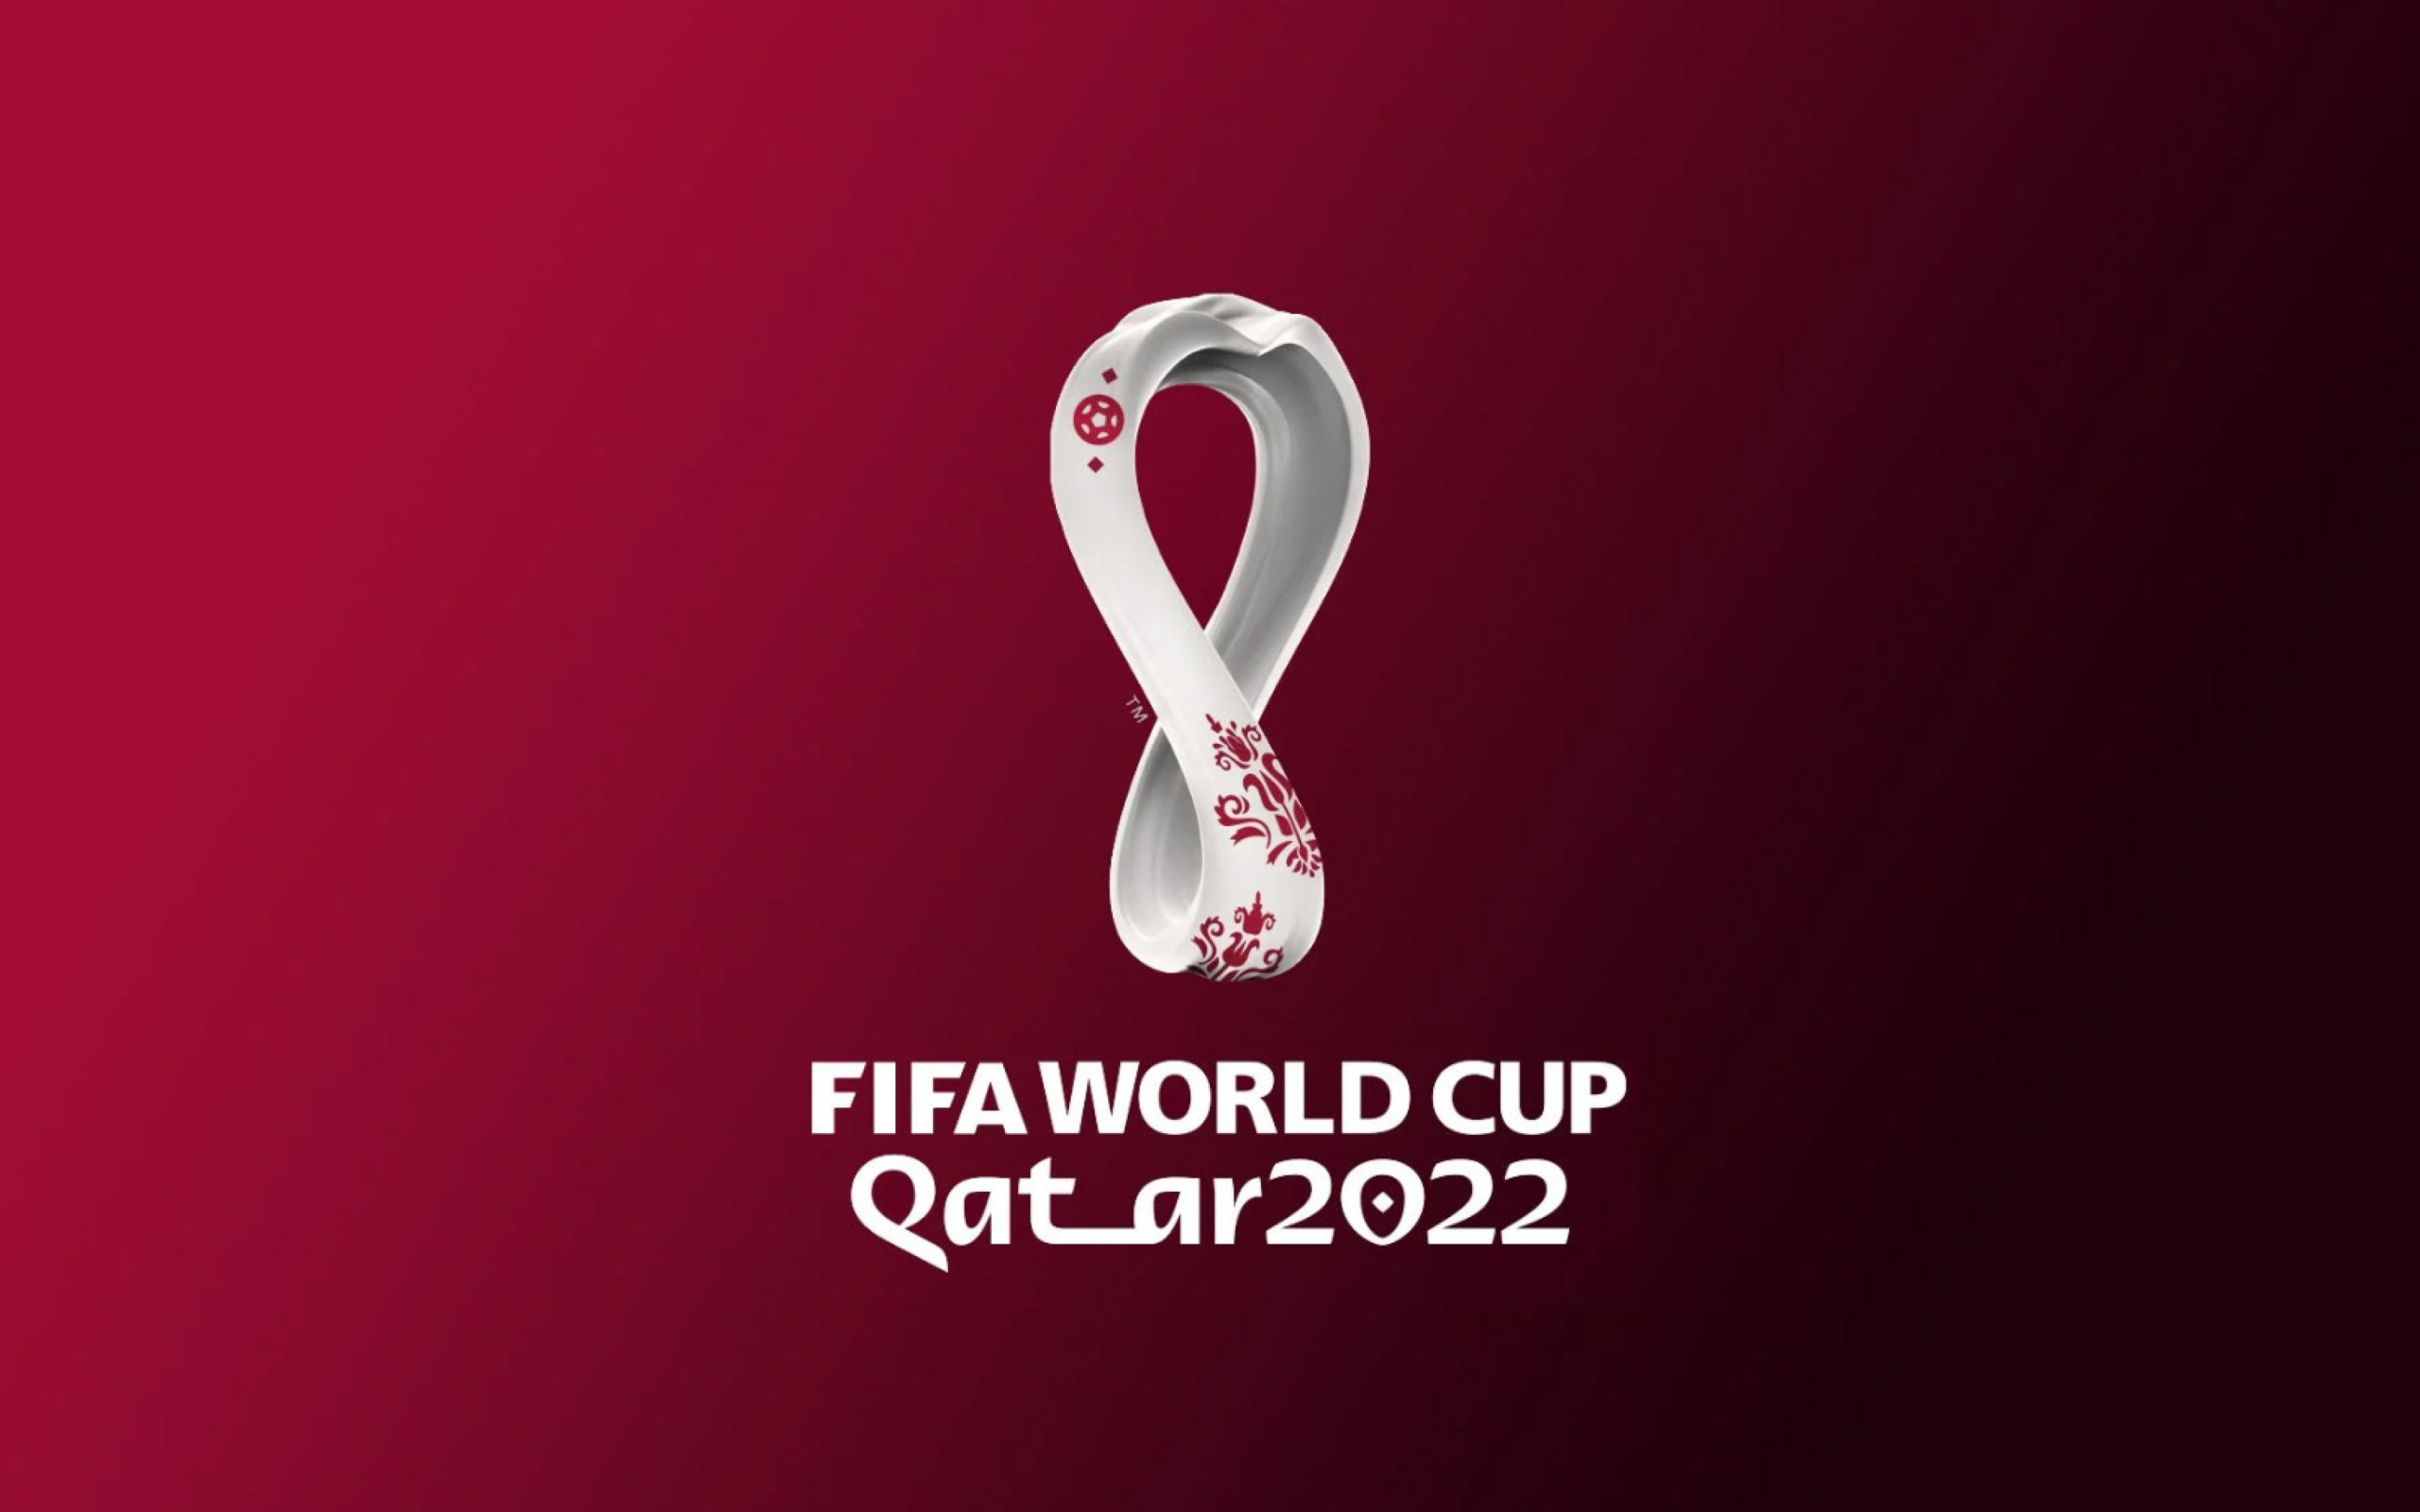 Das World Cup Qatar 2022 Wallpaper 2560x1600